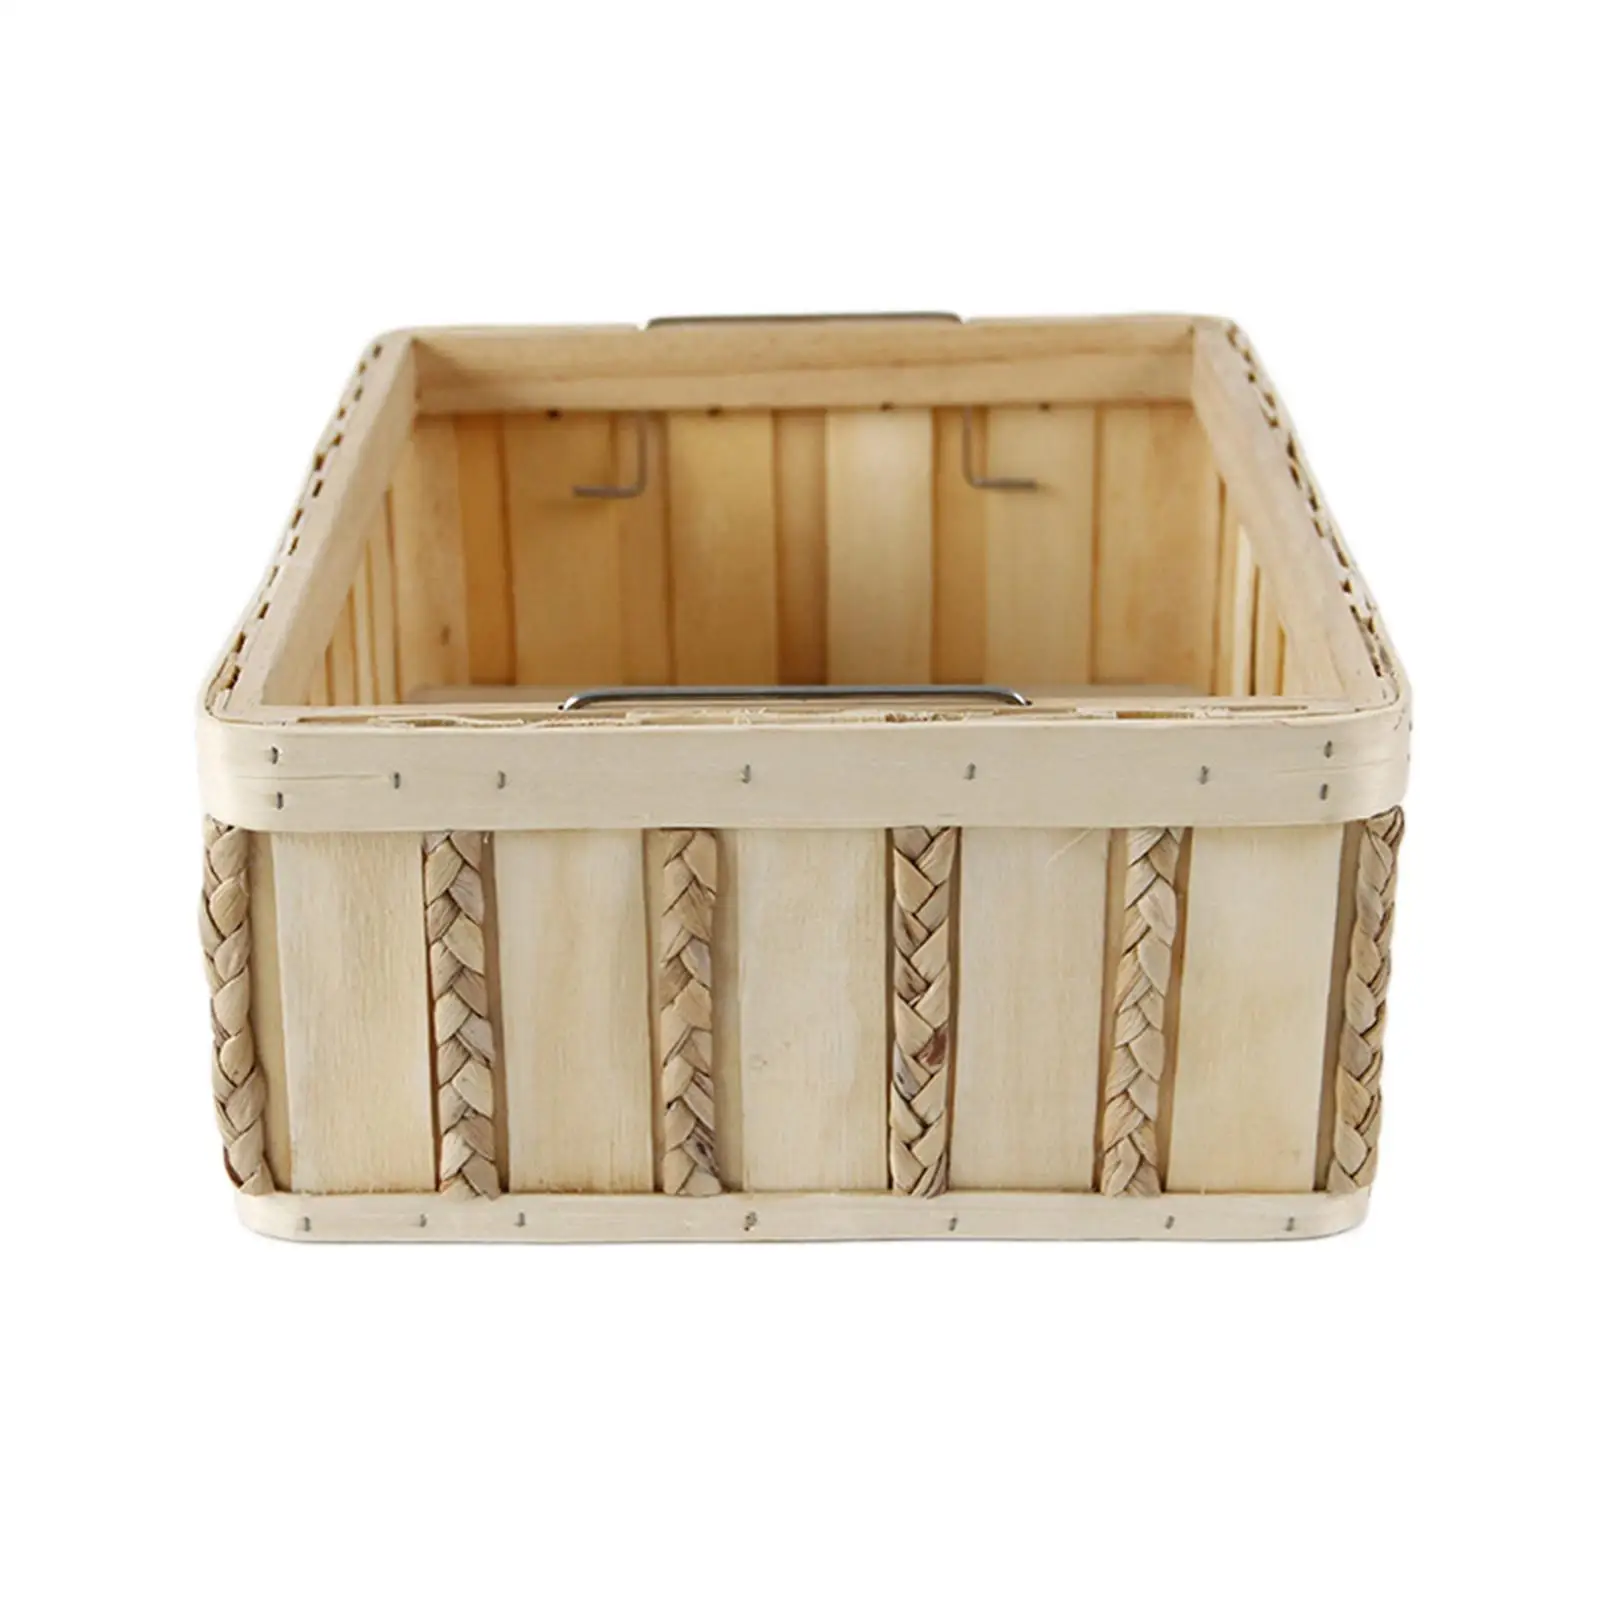 Wooden Storage Box Vintage Toys Snacks Fruit Bread Storage Bins Portable Rattan Organizer Basket for Kitchen Supplies Decorative